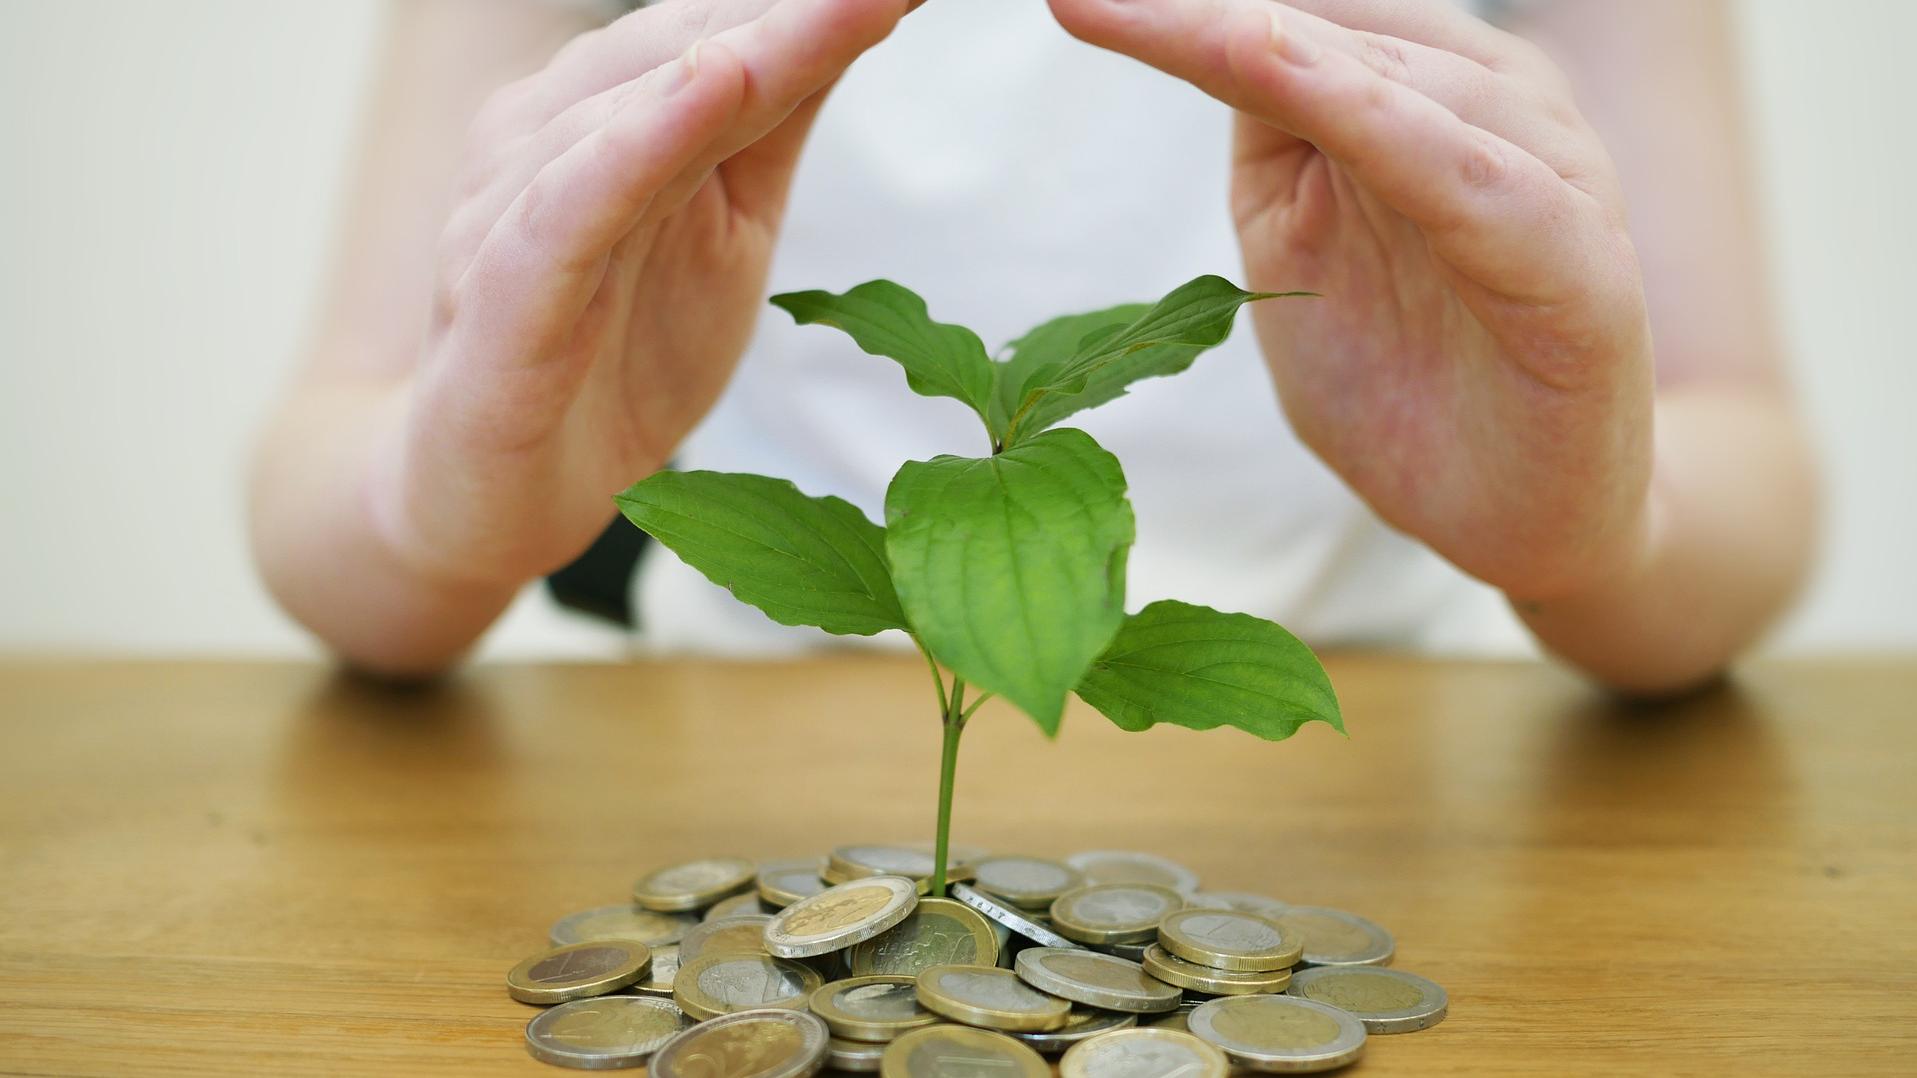 Stimmungsbild zum Beitrag: Es werden Geldmünzen mit einer darauf wachsenden Pflanze abgebildet. Darüber sind schützende Hände gehalten.